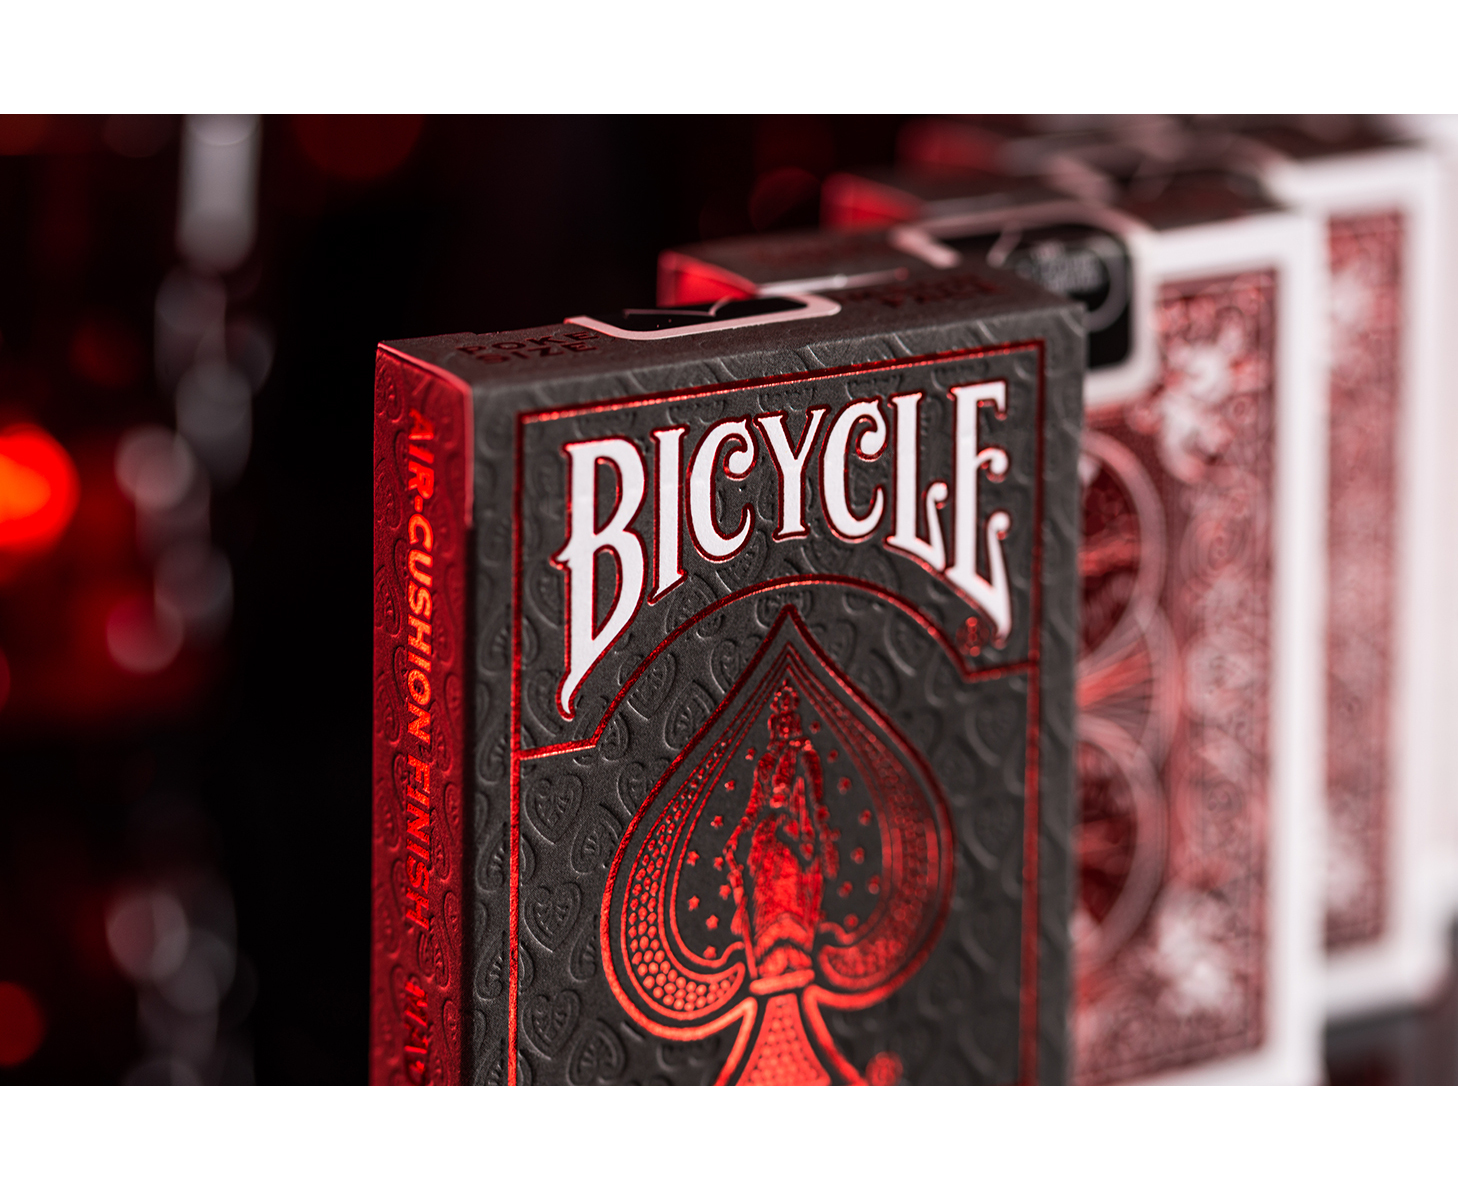 ASS ALTENBURGER Bicycle Crimson Kartenspiel Red Kartendeck Foil - Back